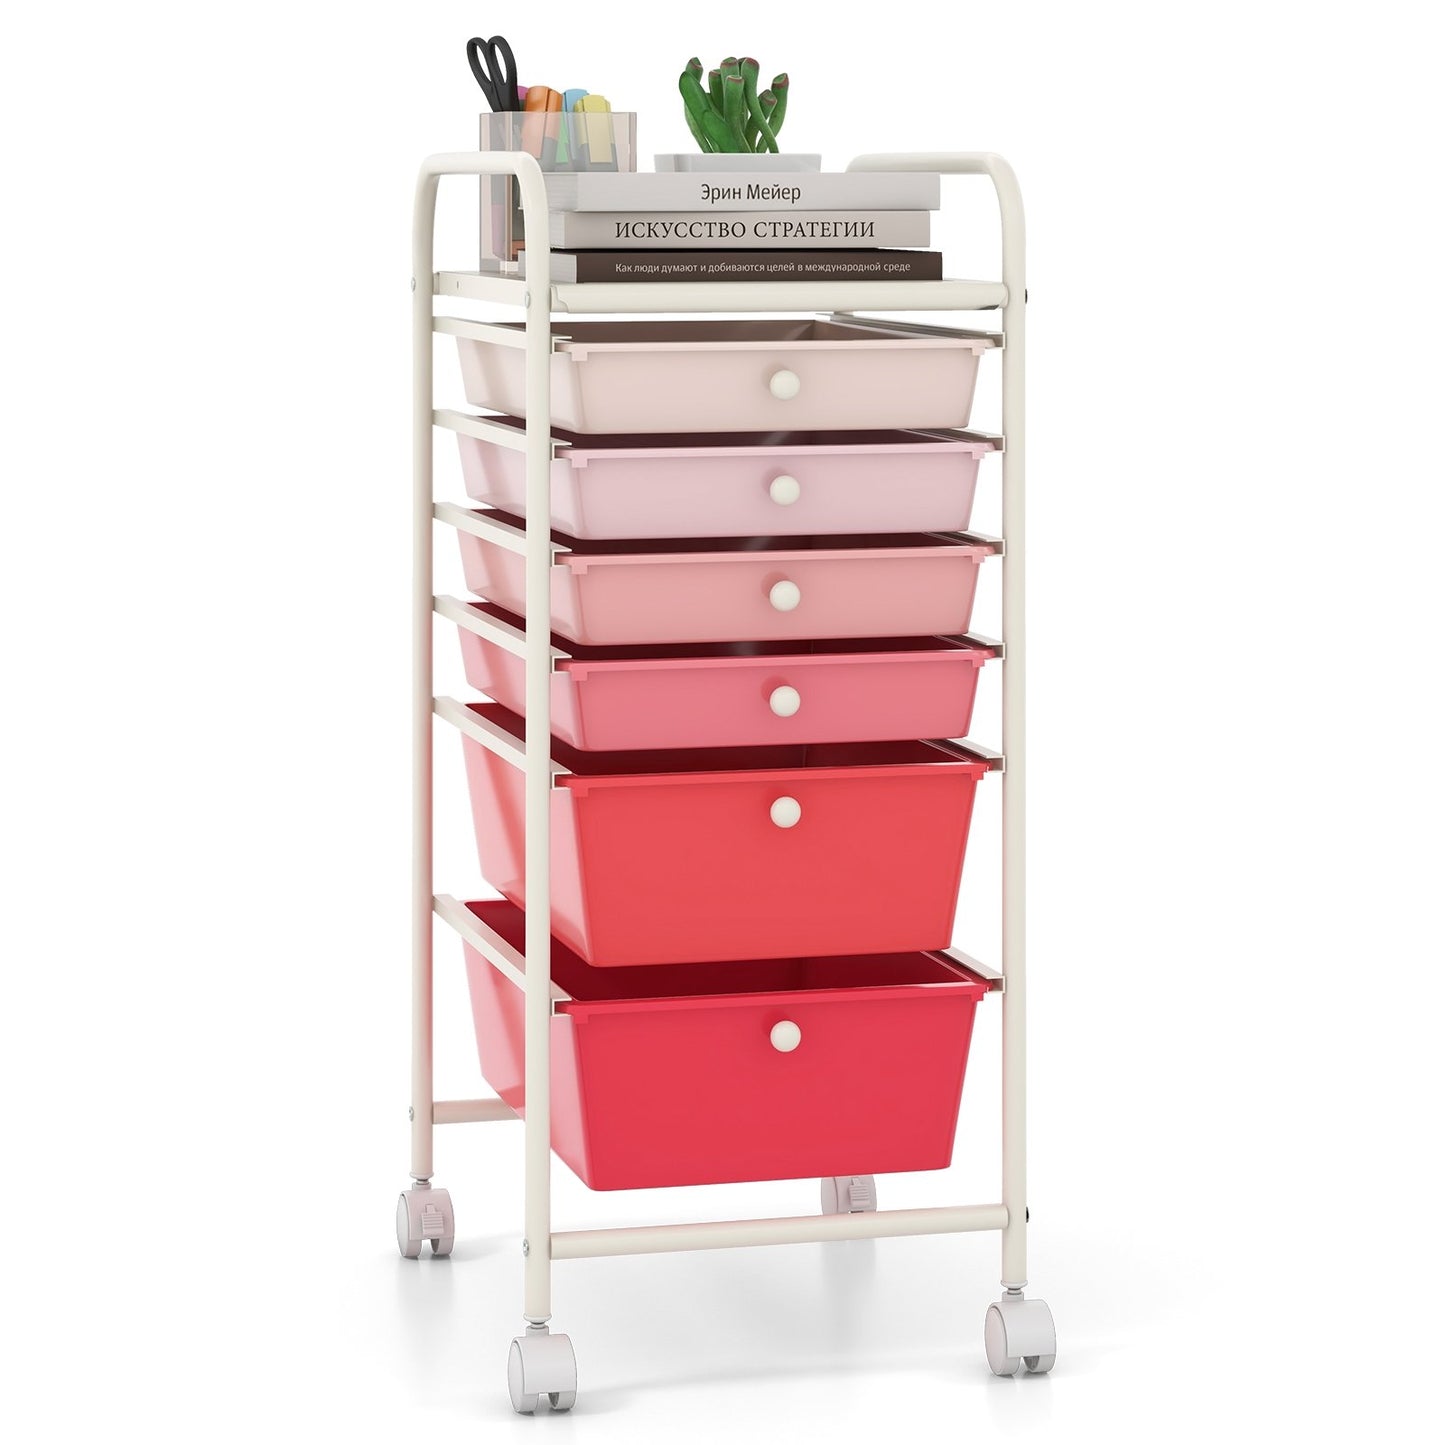 6 Drawers Rolling Storage Cart Organizer, Pink